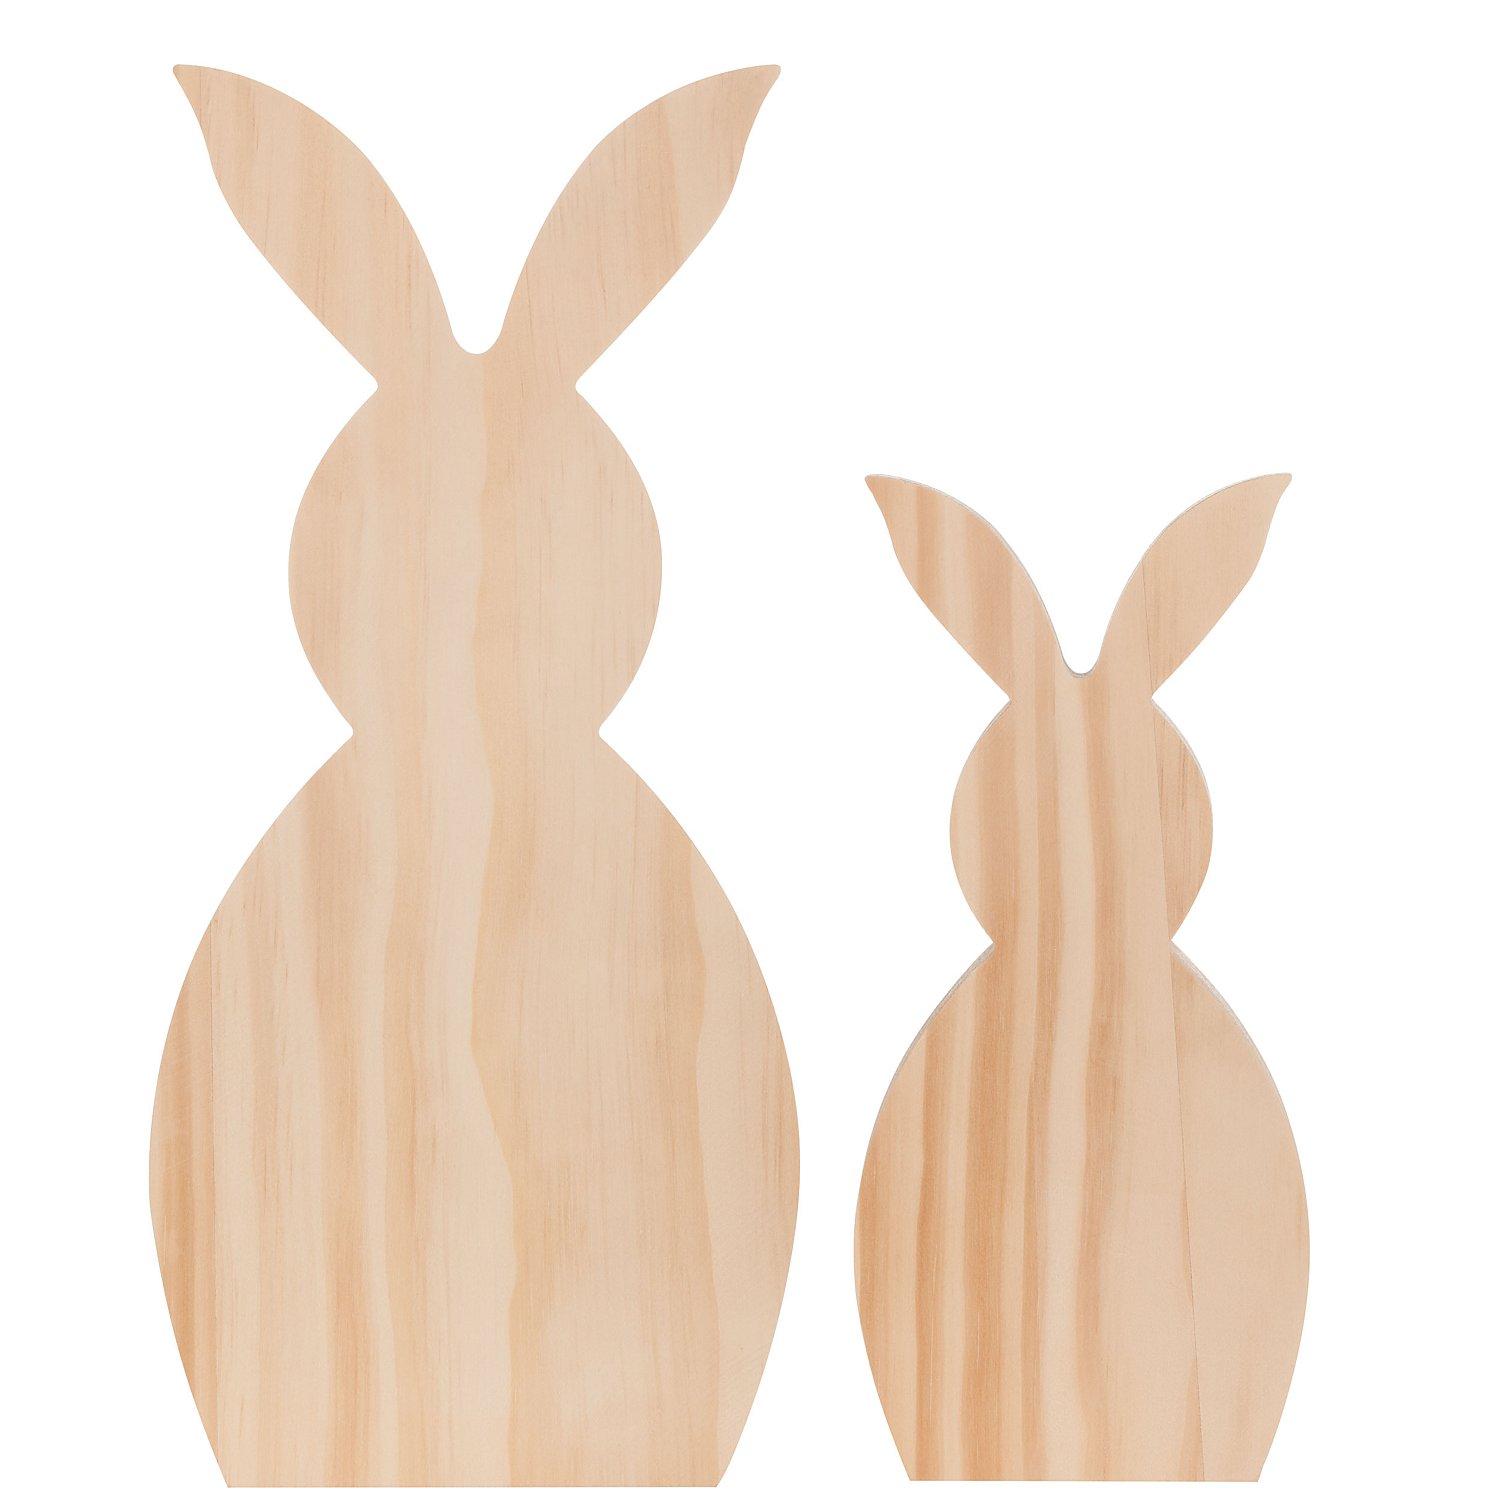 Tischdeko Ostern 30 Stück DIY Osterhase Deko Ostern Hasen Handwerk Holz 3D Holz Hasen Holz Ausschnitte Kaninchen Form Holz Verzierung Bastelzubehör Dekorationen Hasen aus Holz zum Bemalen